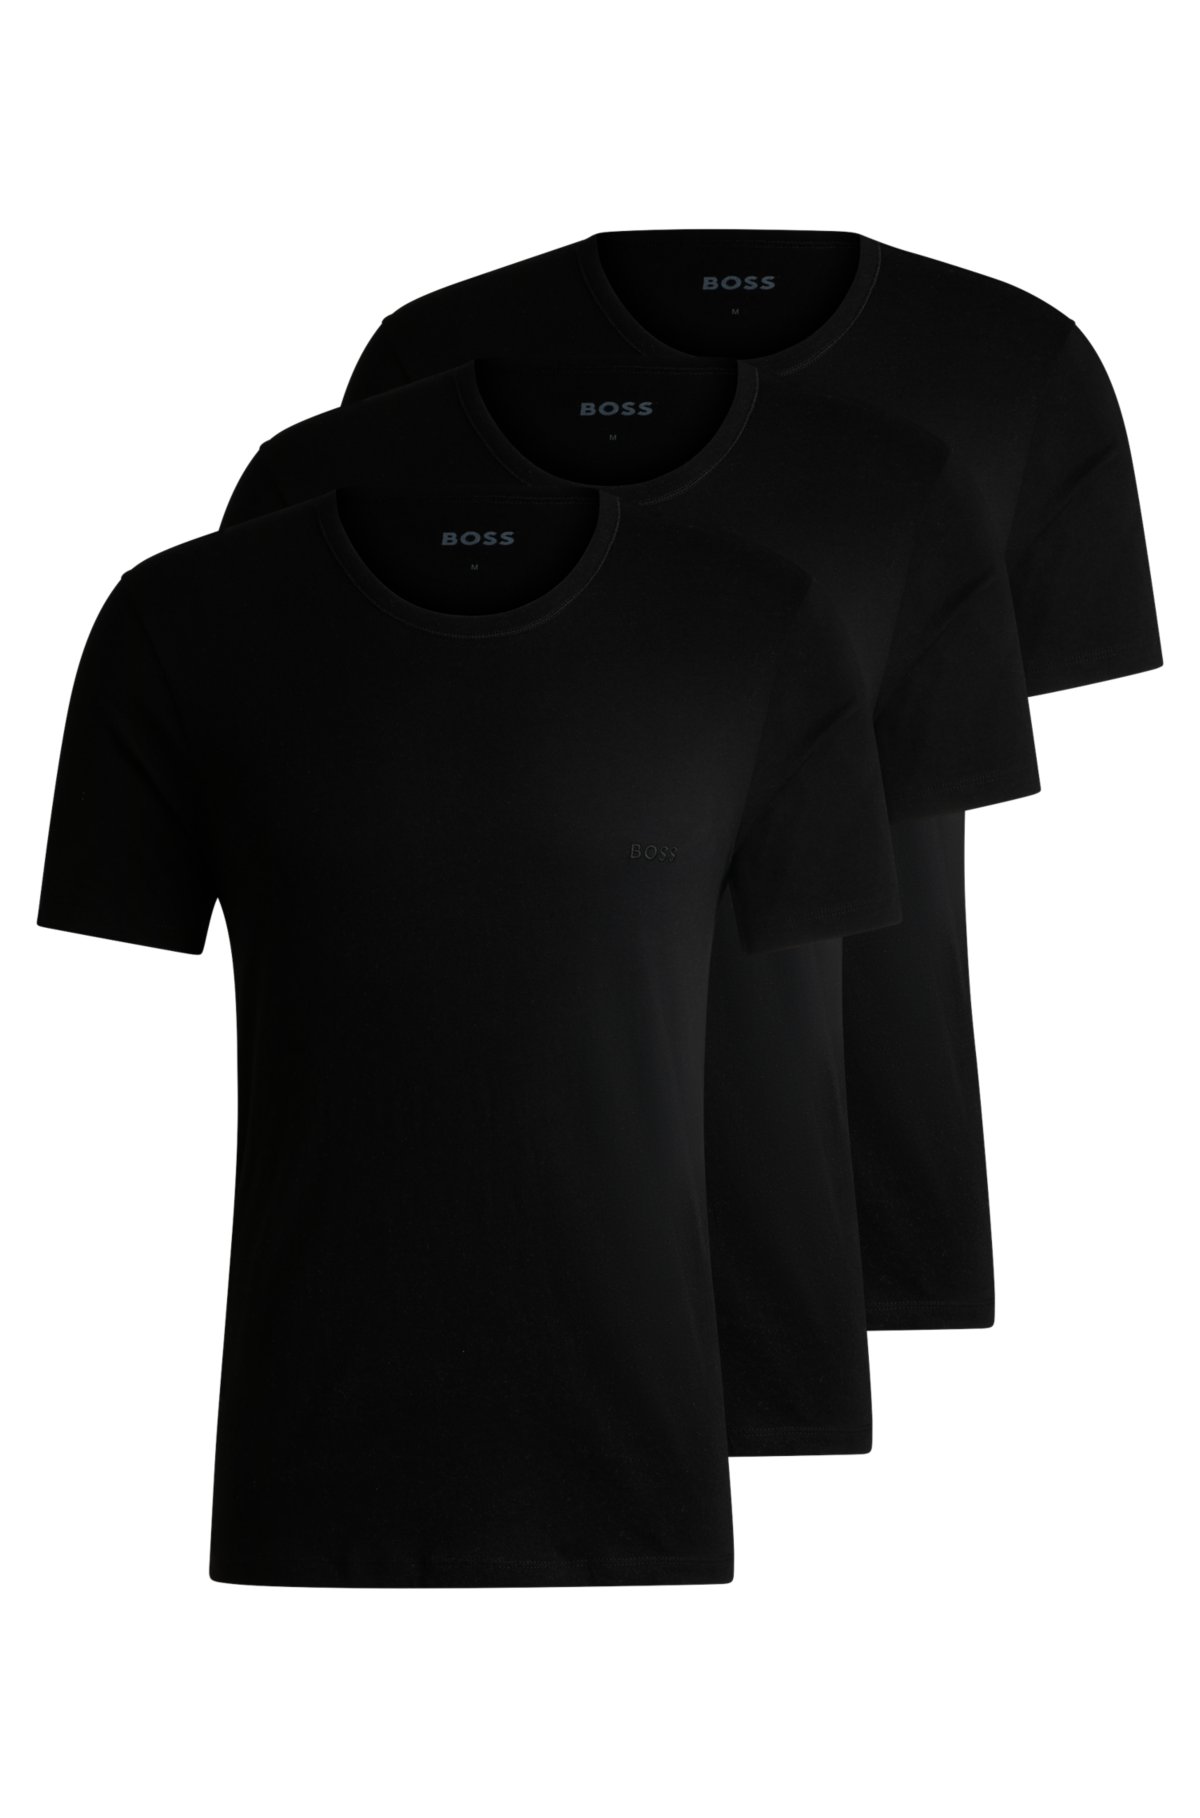 Black & White Tee Shirt 3-Pack